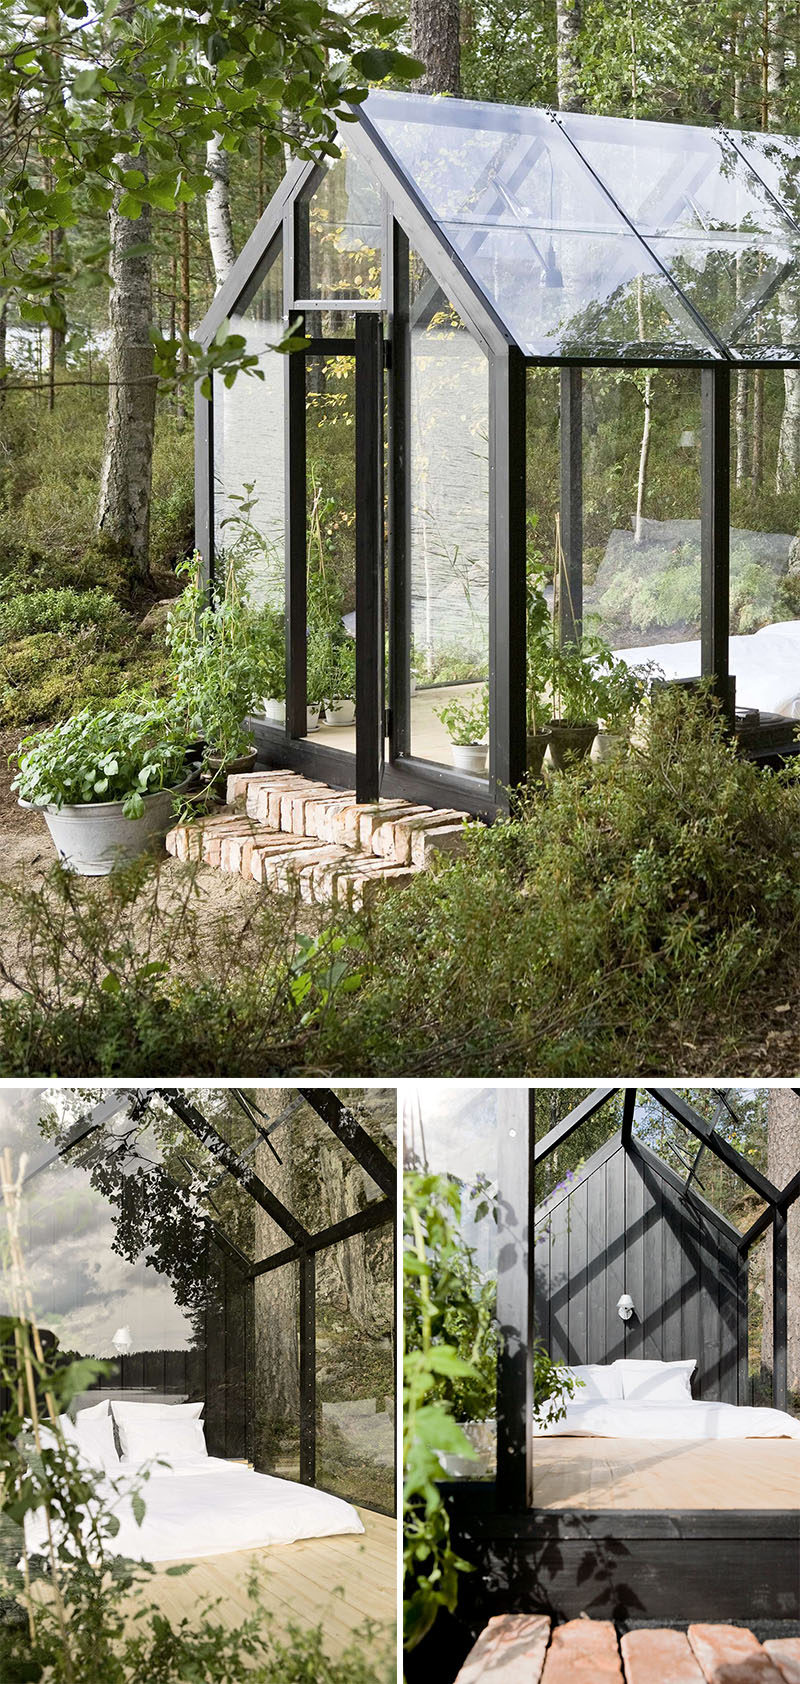 Вилле Хара из Avanto Architects вместе с Линдой Бергрот спроектировали модульную тепцу с навесом, которую можно использовать как яркий садовый оазис 